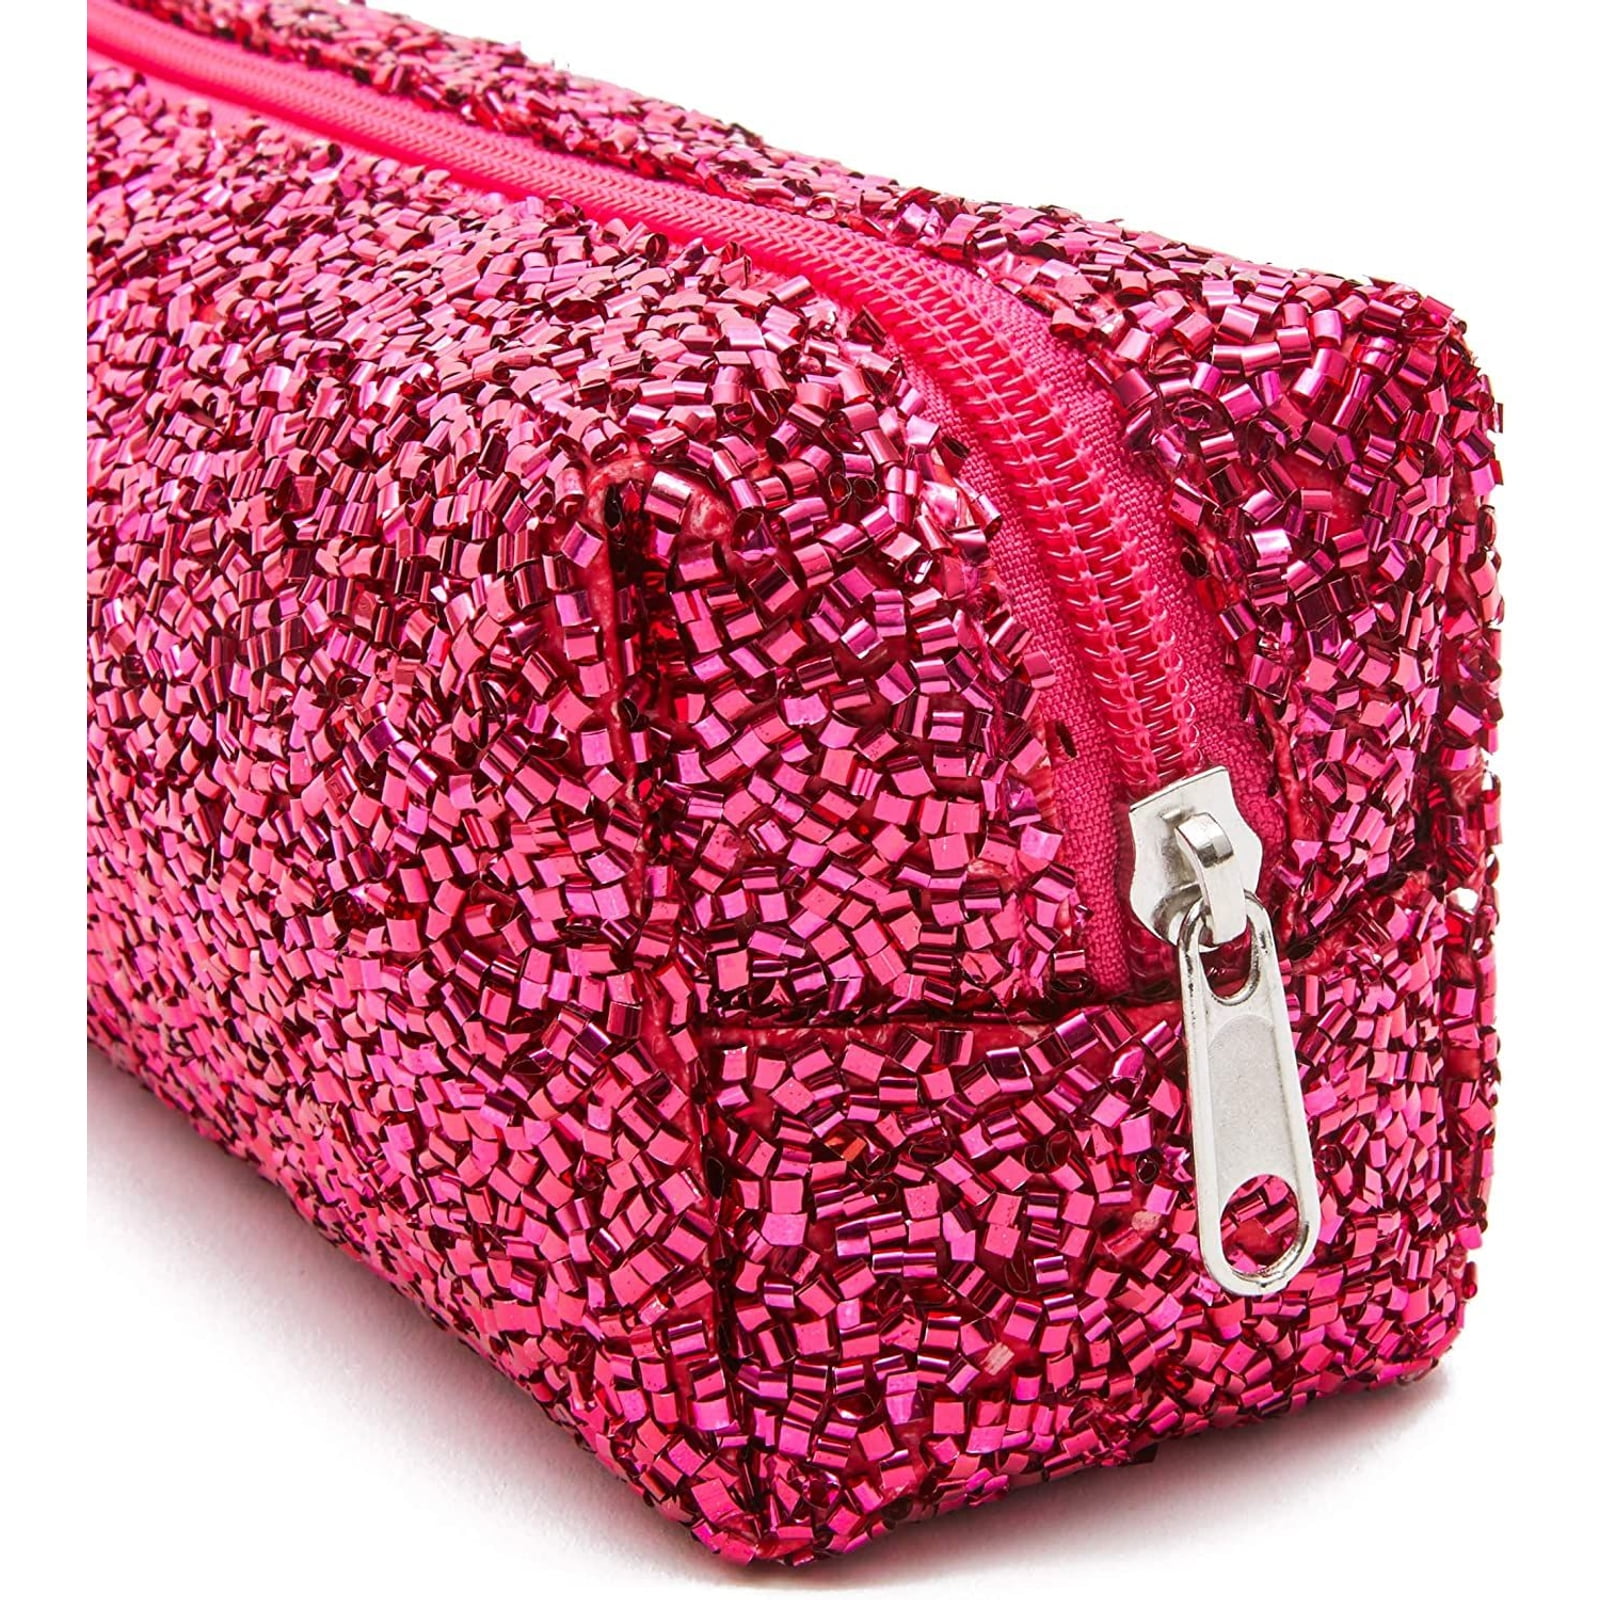 Fuchsia Glitter Makeup Bag Sparkly Fuchsia Bag Pink Glitter 